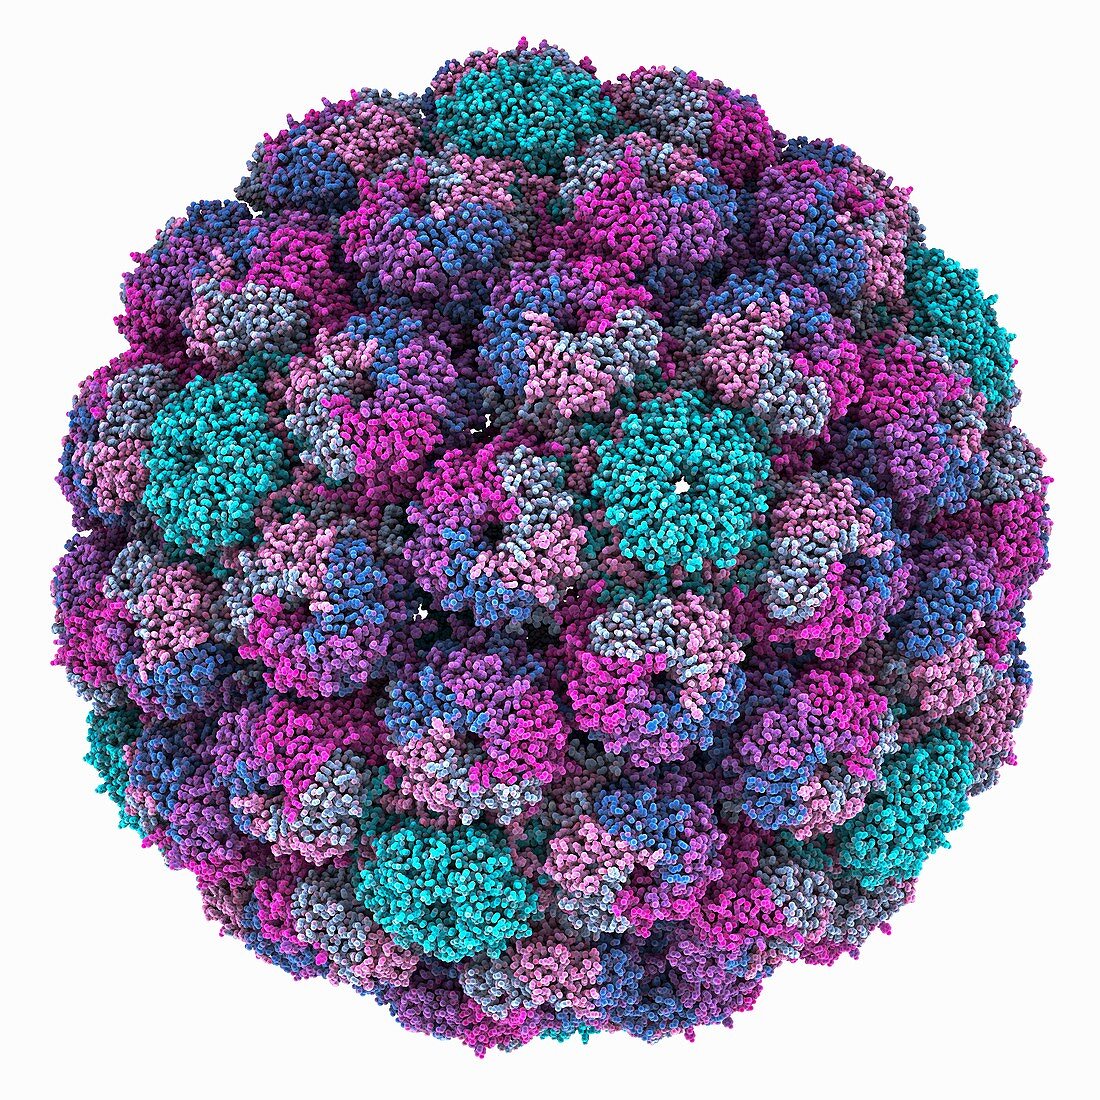 Merkel cell polyomavirus particle, illustration